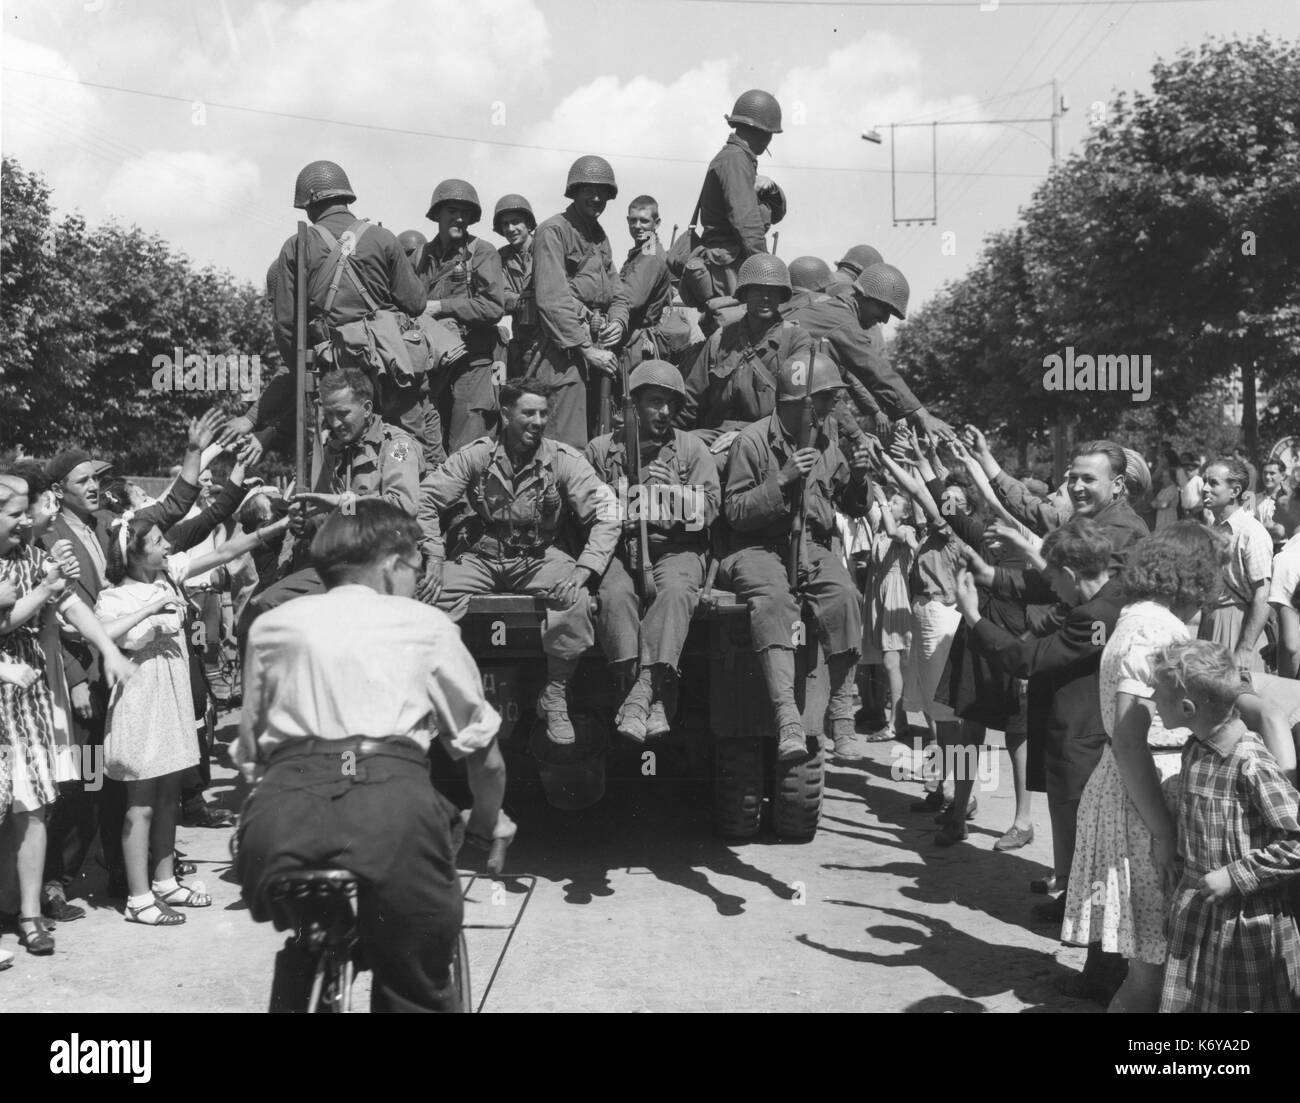 Les troupes de l'armée américaine sont accueillis par une foule de Parisiens libérés lorsqu'ils entrent dans la ville. Paris, France, 25/08/44. Banque D'Images